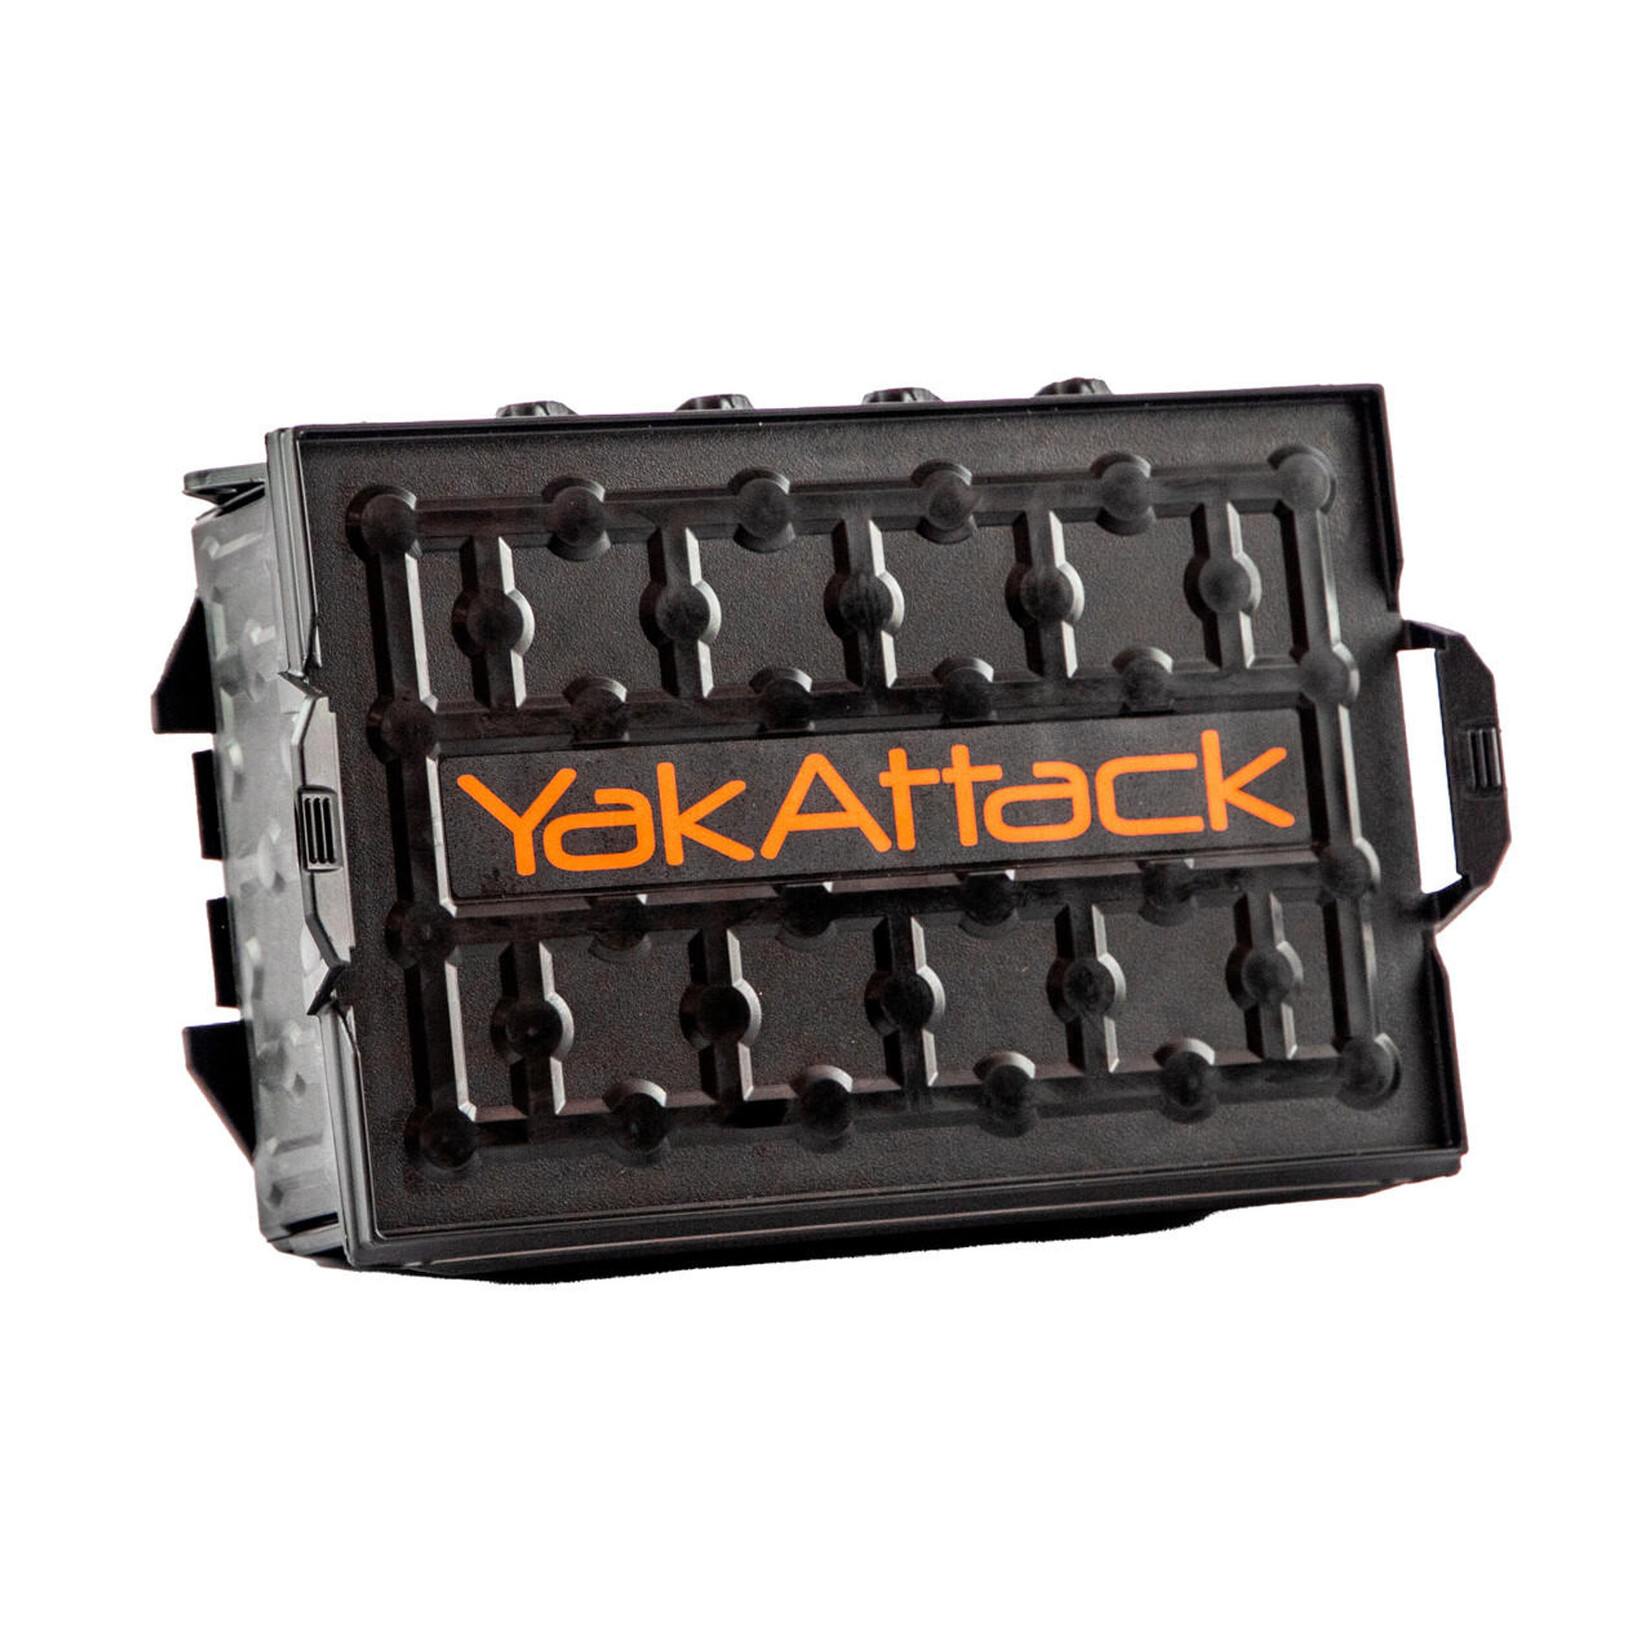 Yakattack YakAttack TracPak Stackable Storage Box